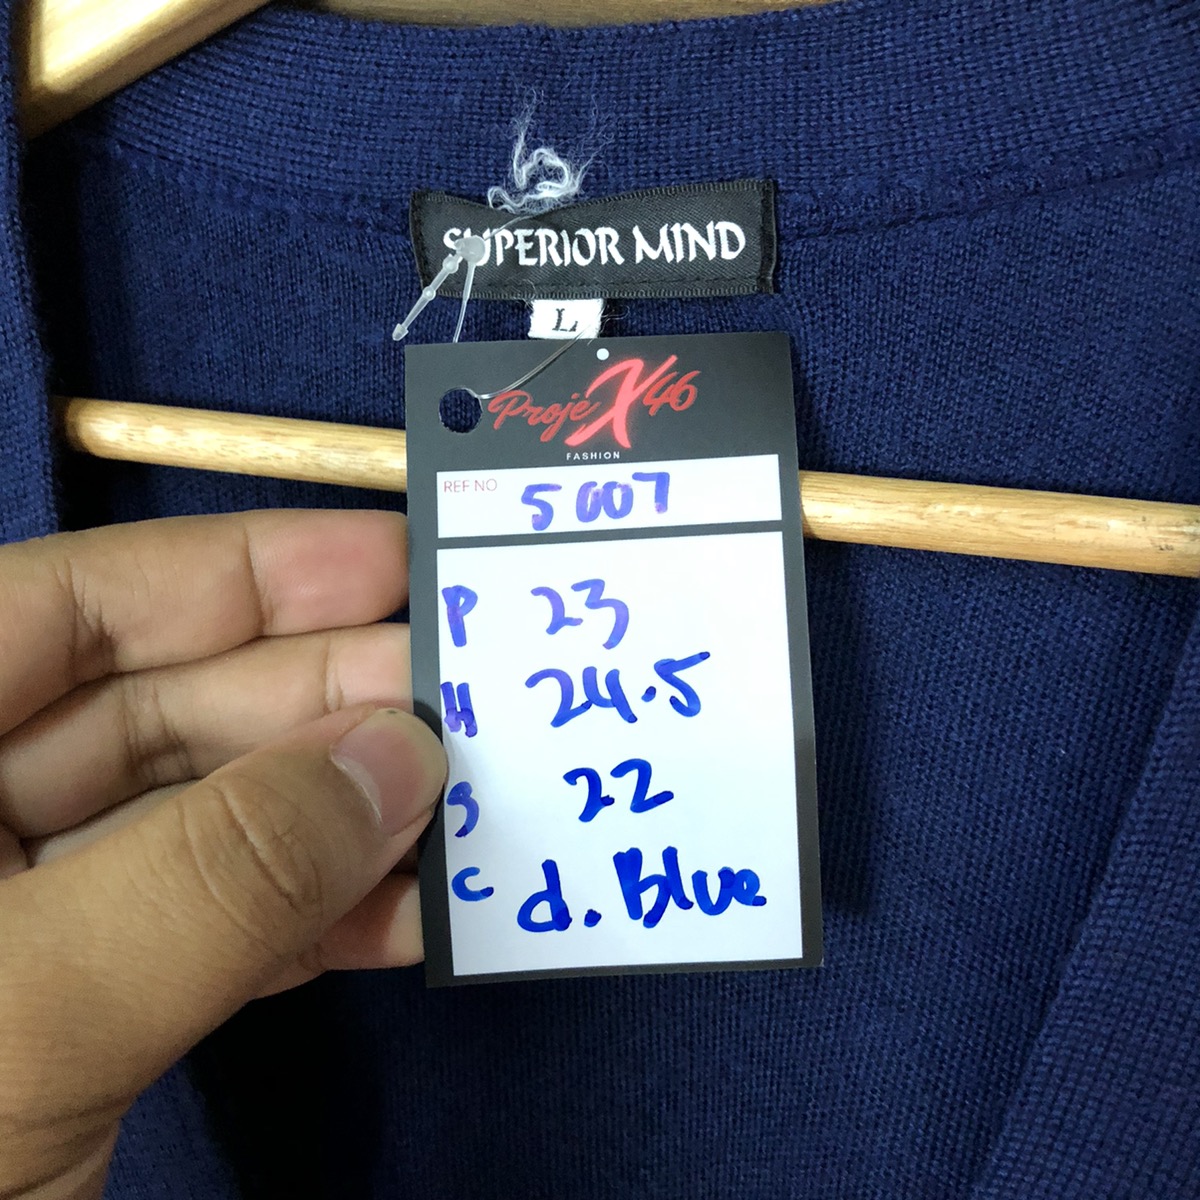 Cardigan - Superior Mind Dark blue Cardigan knitwear #5007 - 7